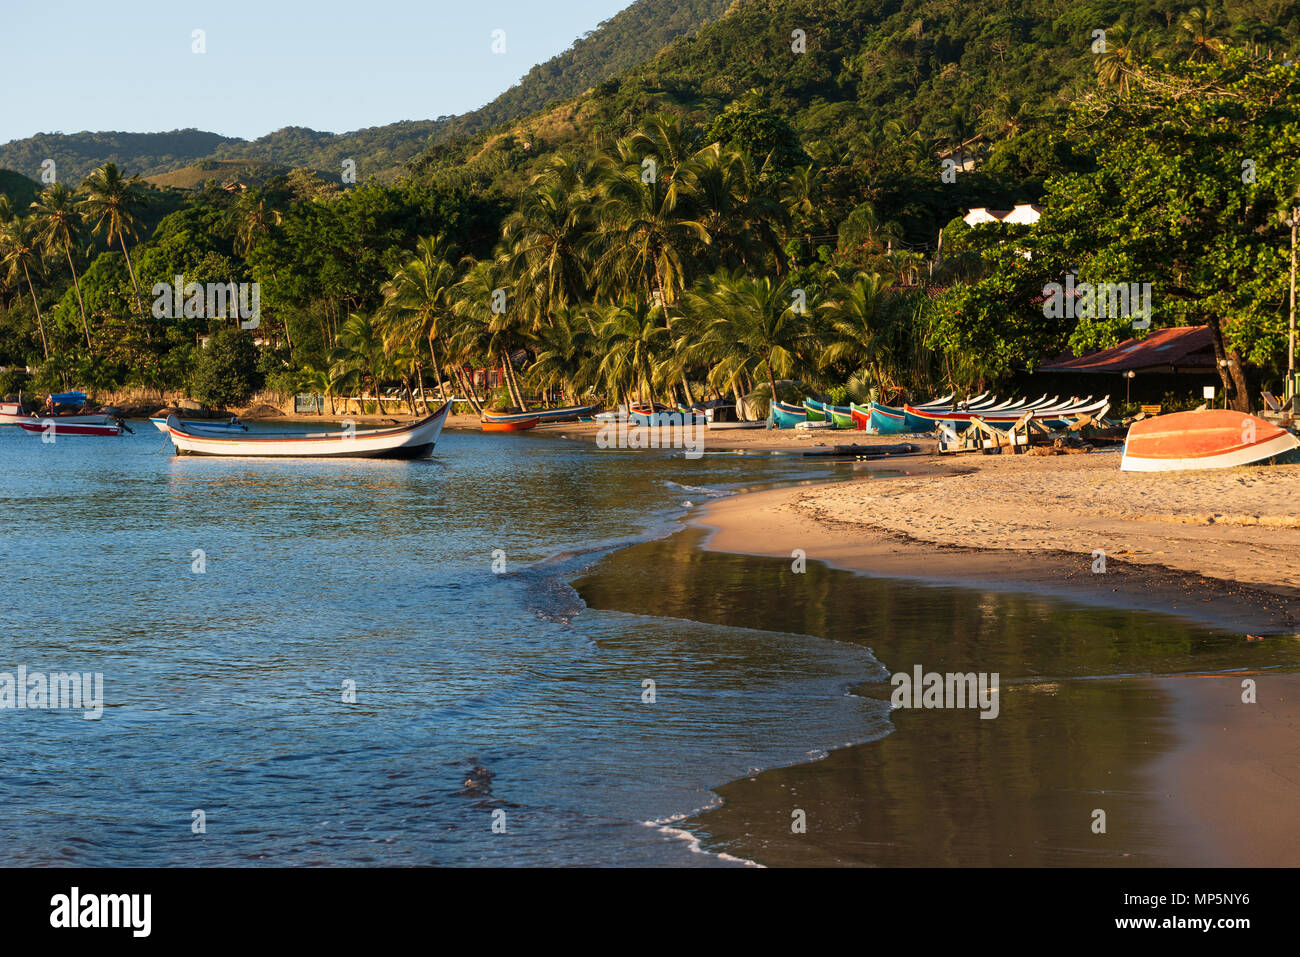 Santa tereza Beach, in Ilhabela, SE Brazil Stock Photo